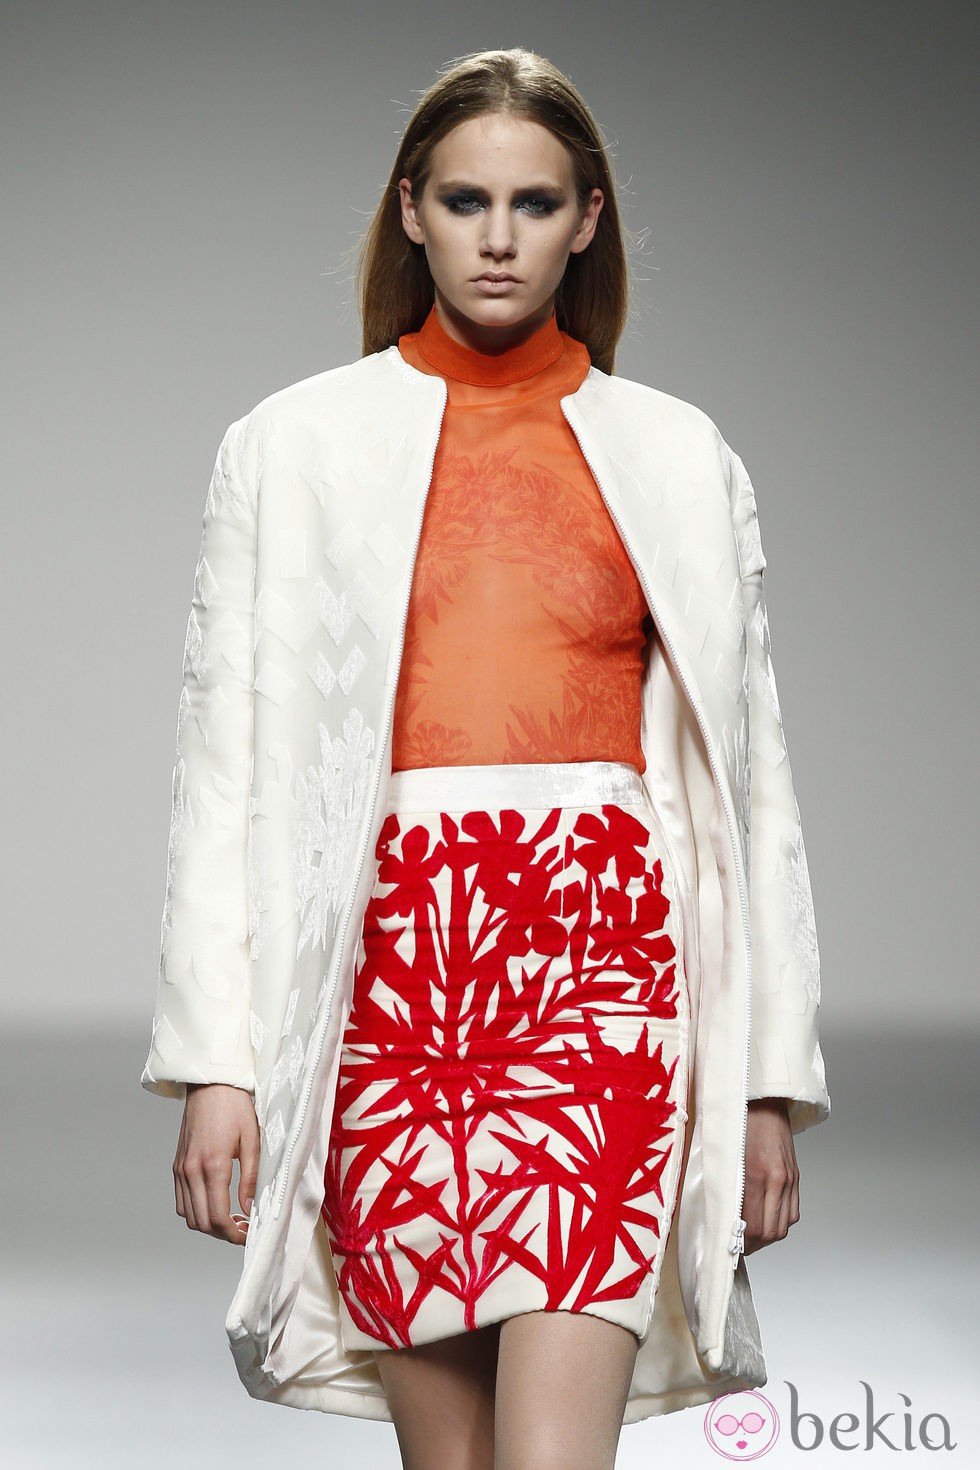 Top naranja transparente y falda con estampado rojo de River William en 'El Ego' de Fashion Week Madrid